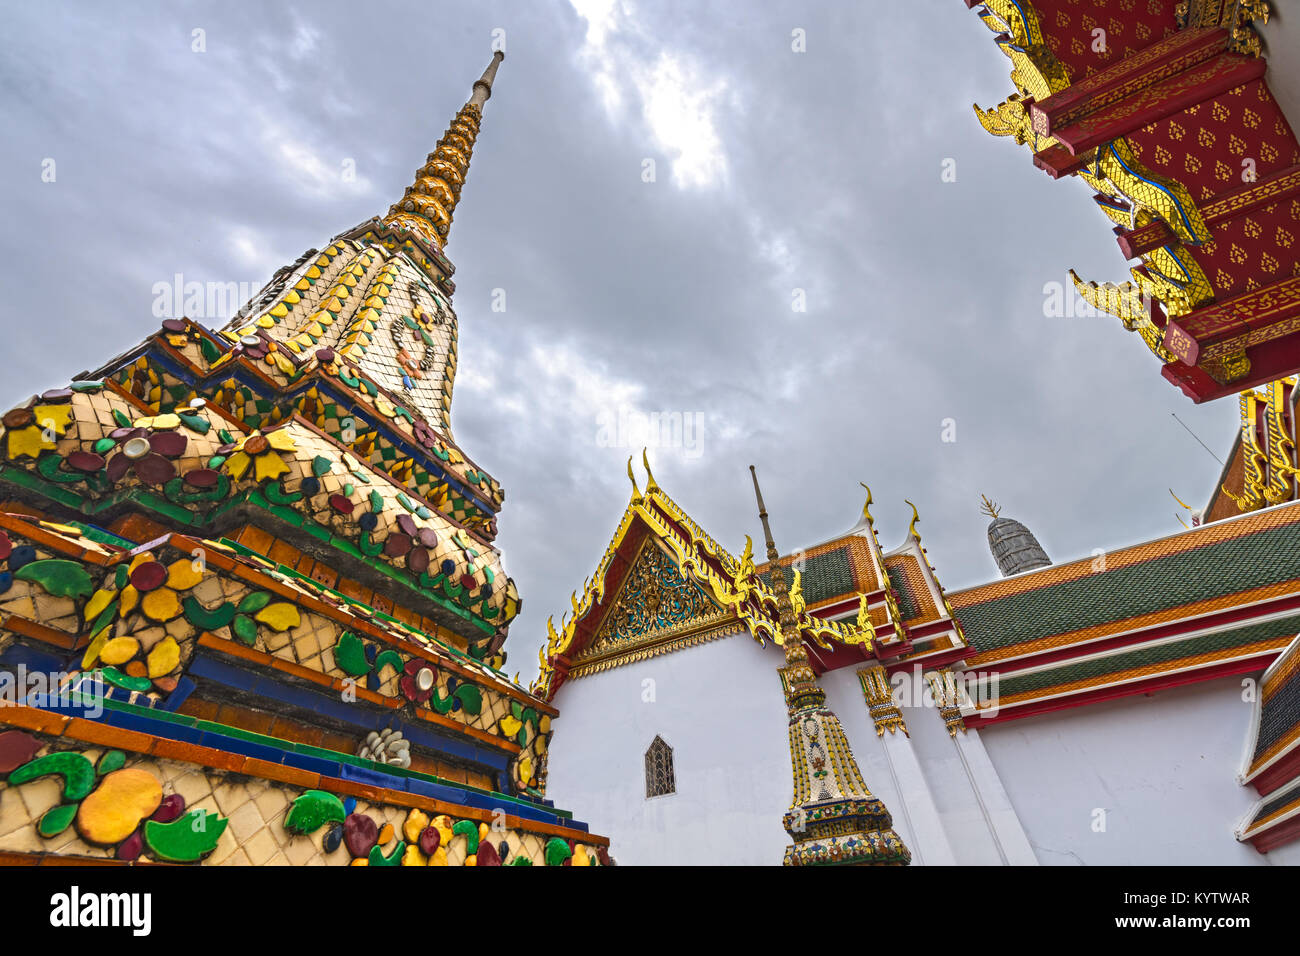 Bajo el ángulo de las Pagodas y edificios en el templo budista de Wat Pho, Bangkok, Tailandia. Foto de stock